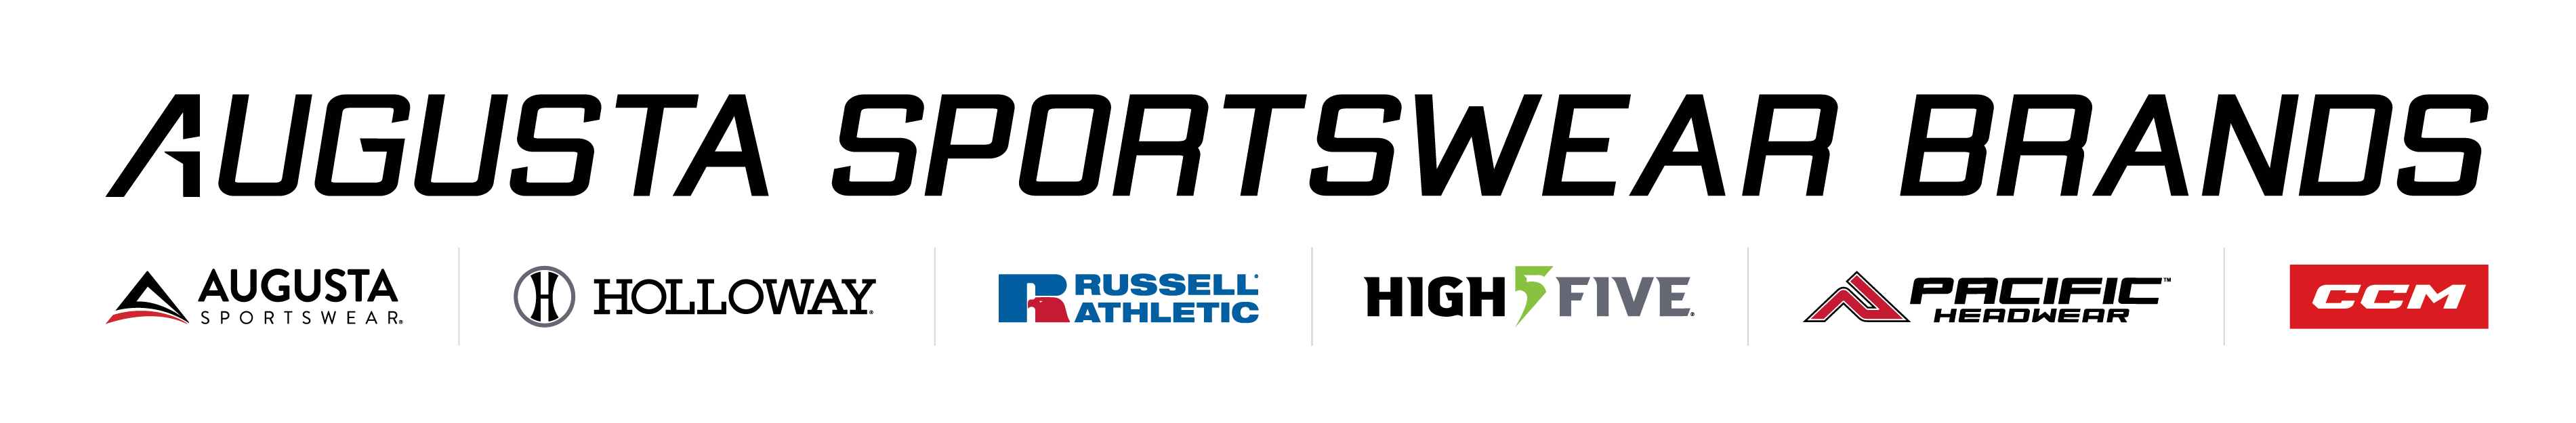 Augusta Sportswear Brands Signs with DeSL